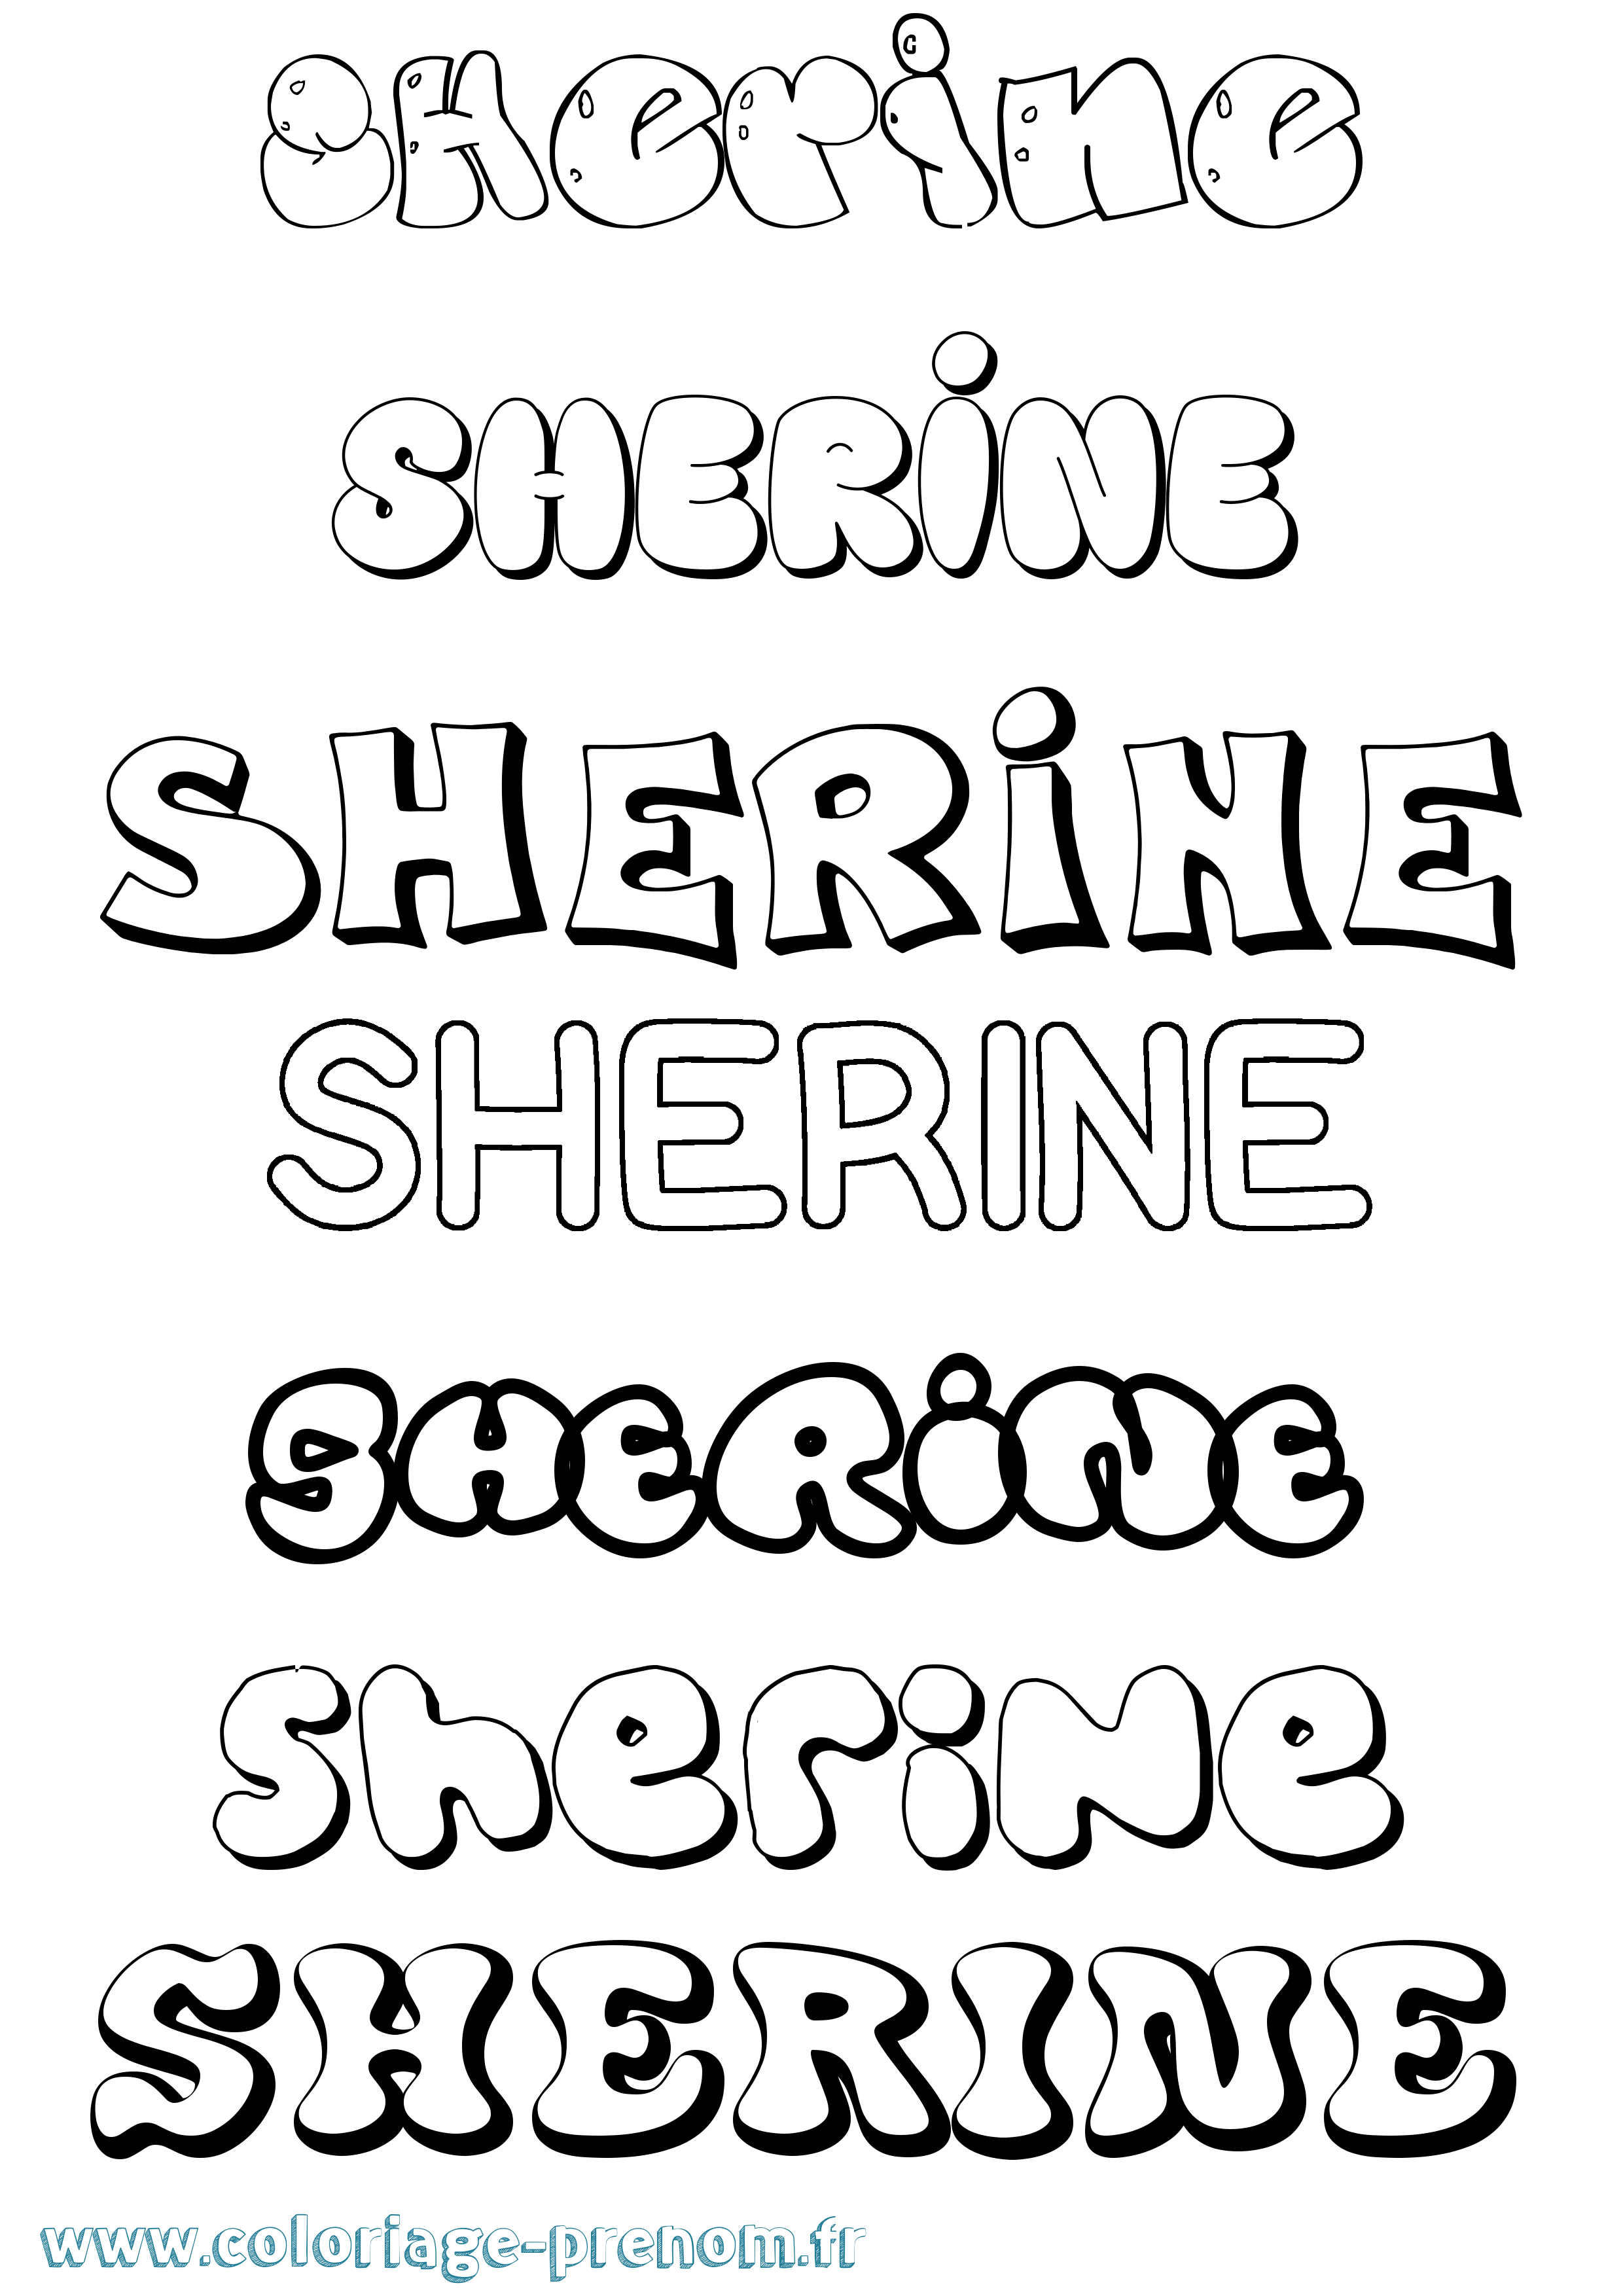 Coloriage prénom Sherine Bubble